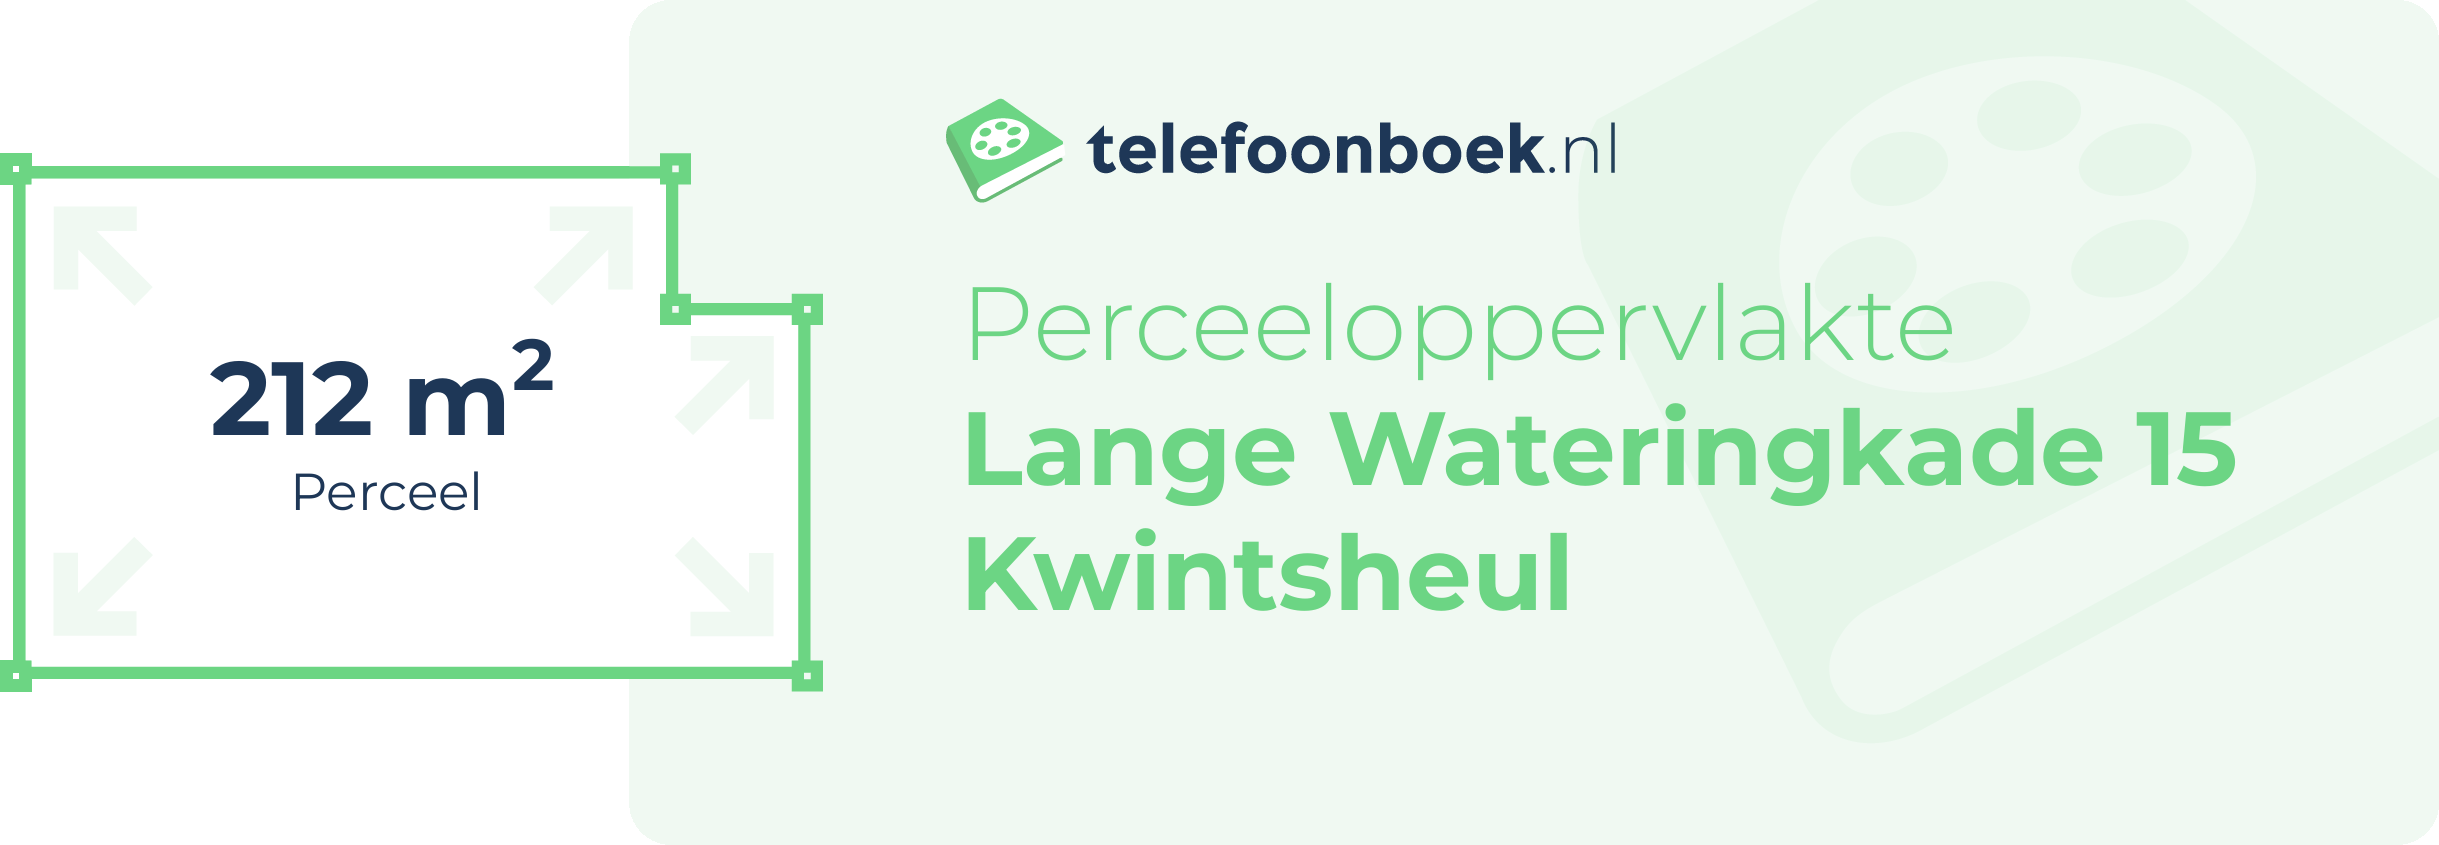 Perceeloppervlakte Lange Wateringkade 15 Kwintsheul